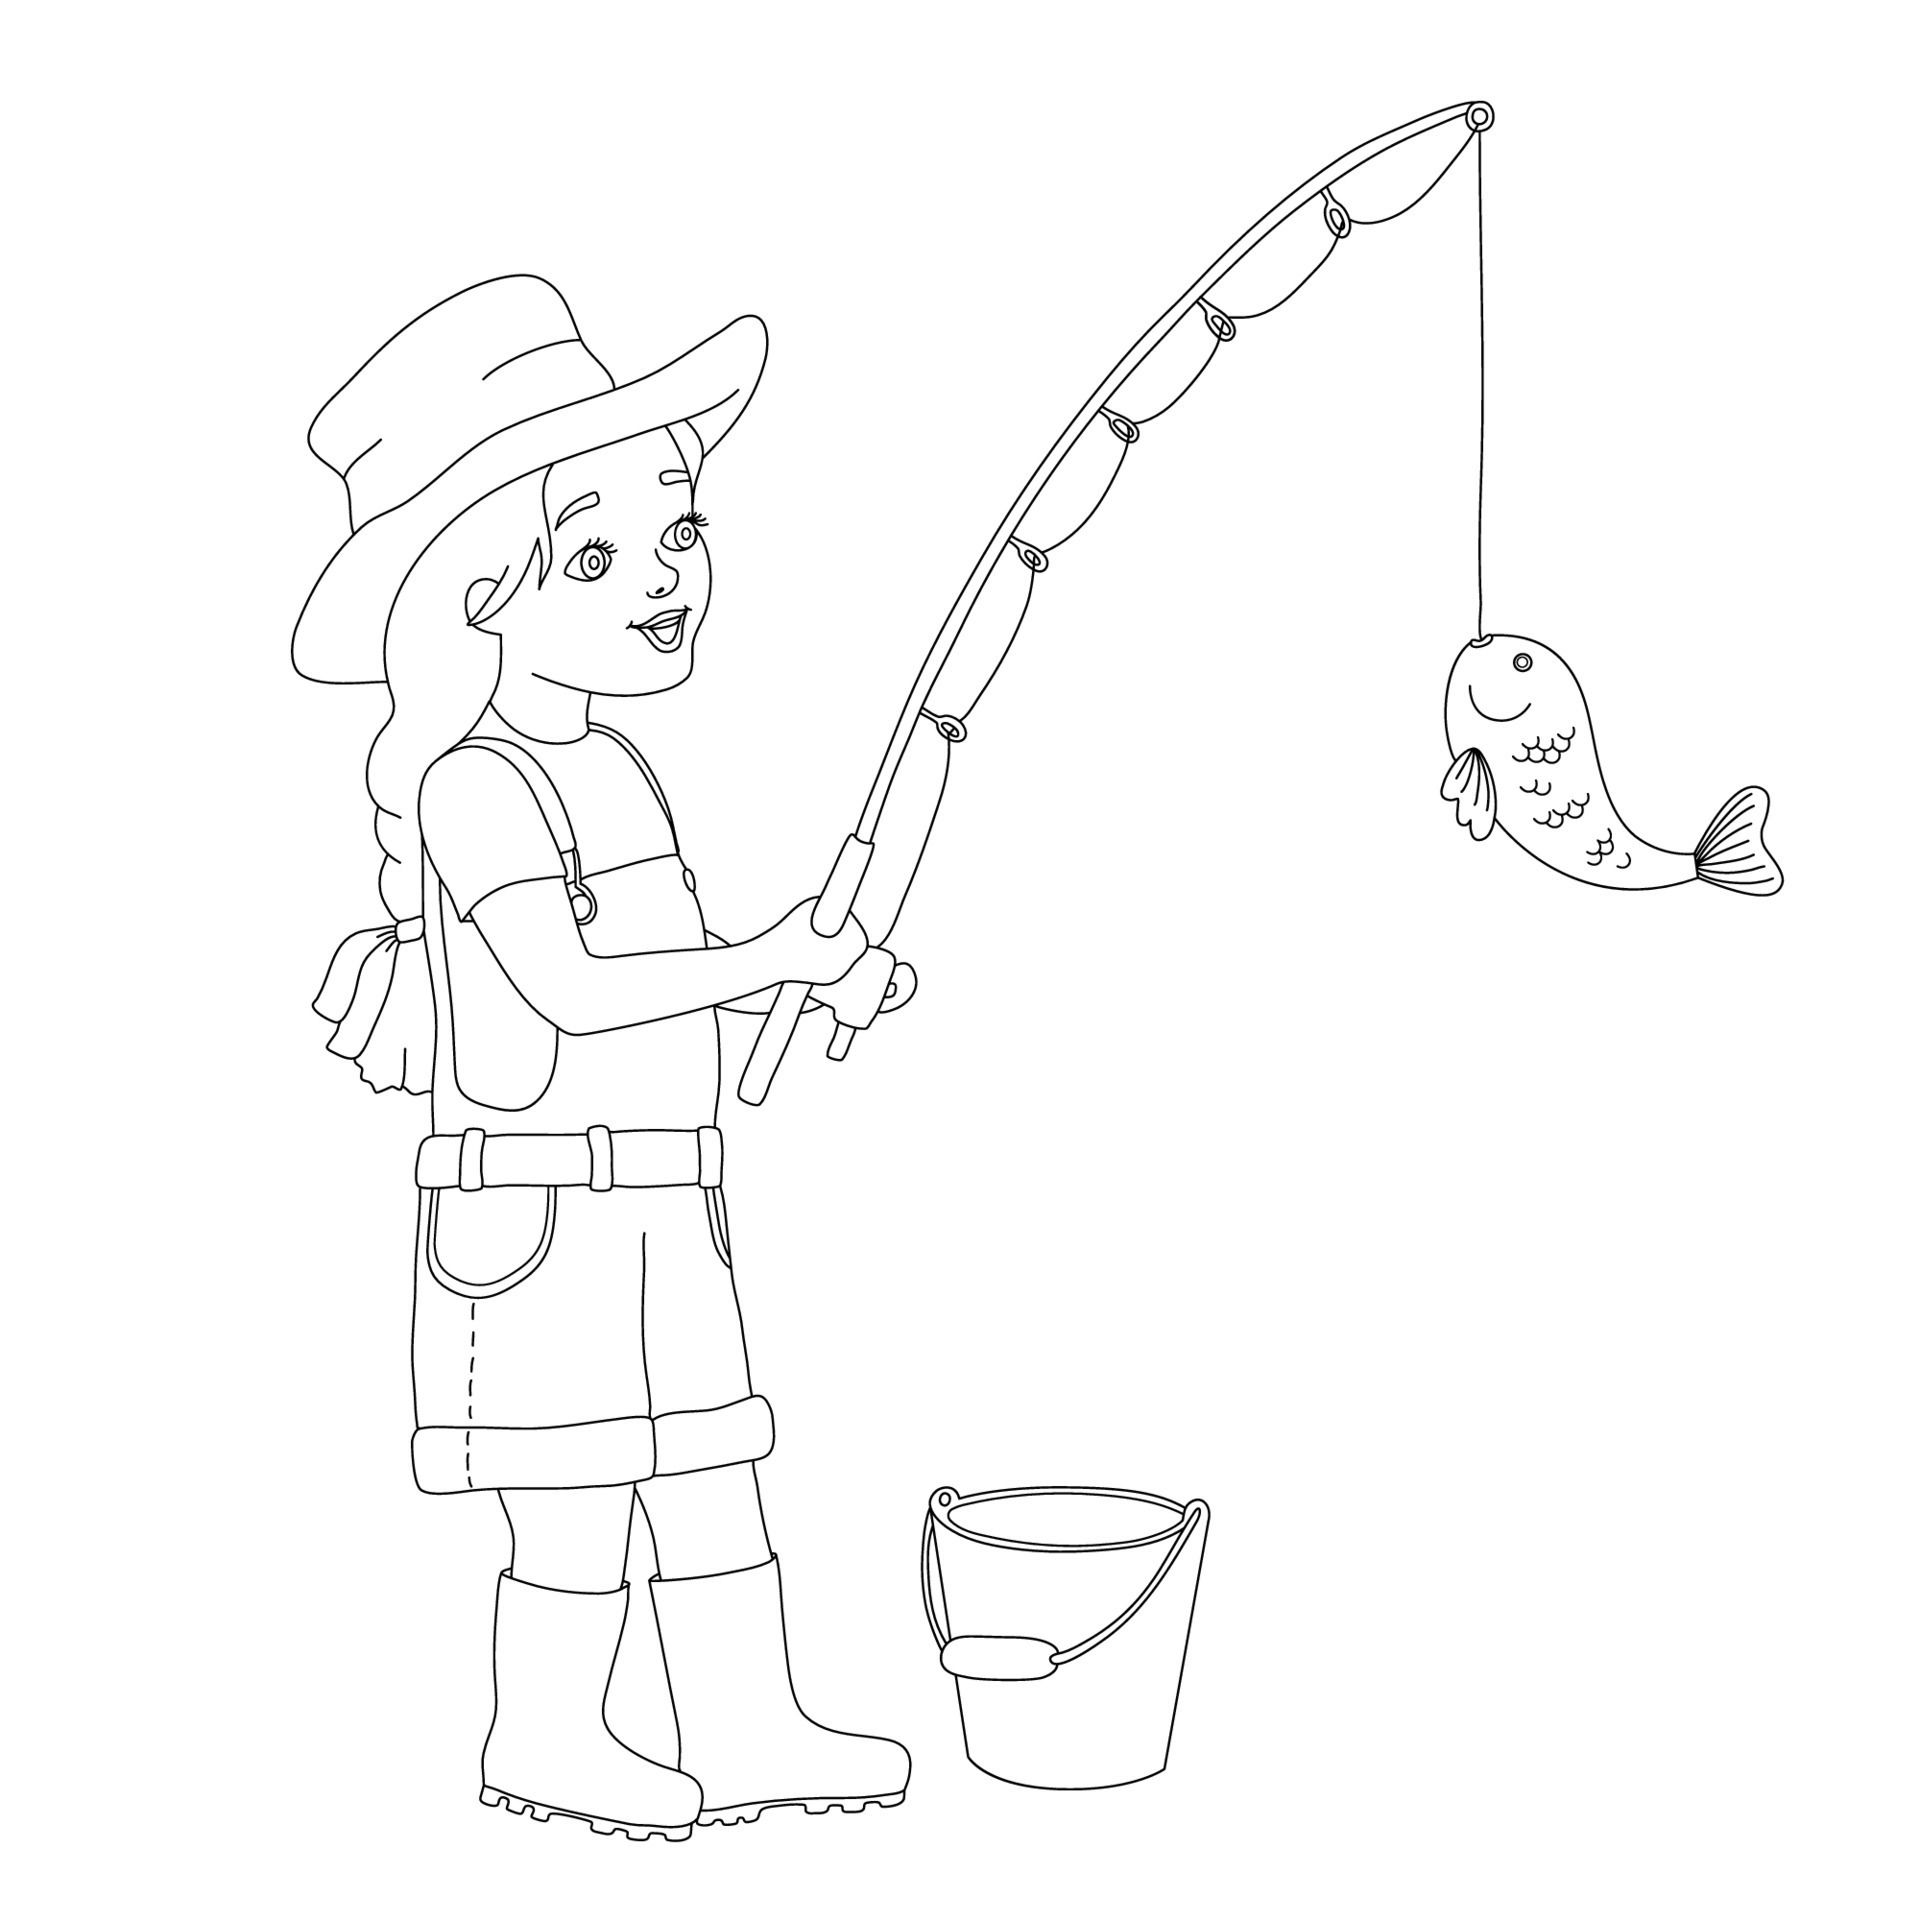 Little girl fishing. Full length of smiling girl holding fishing